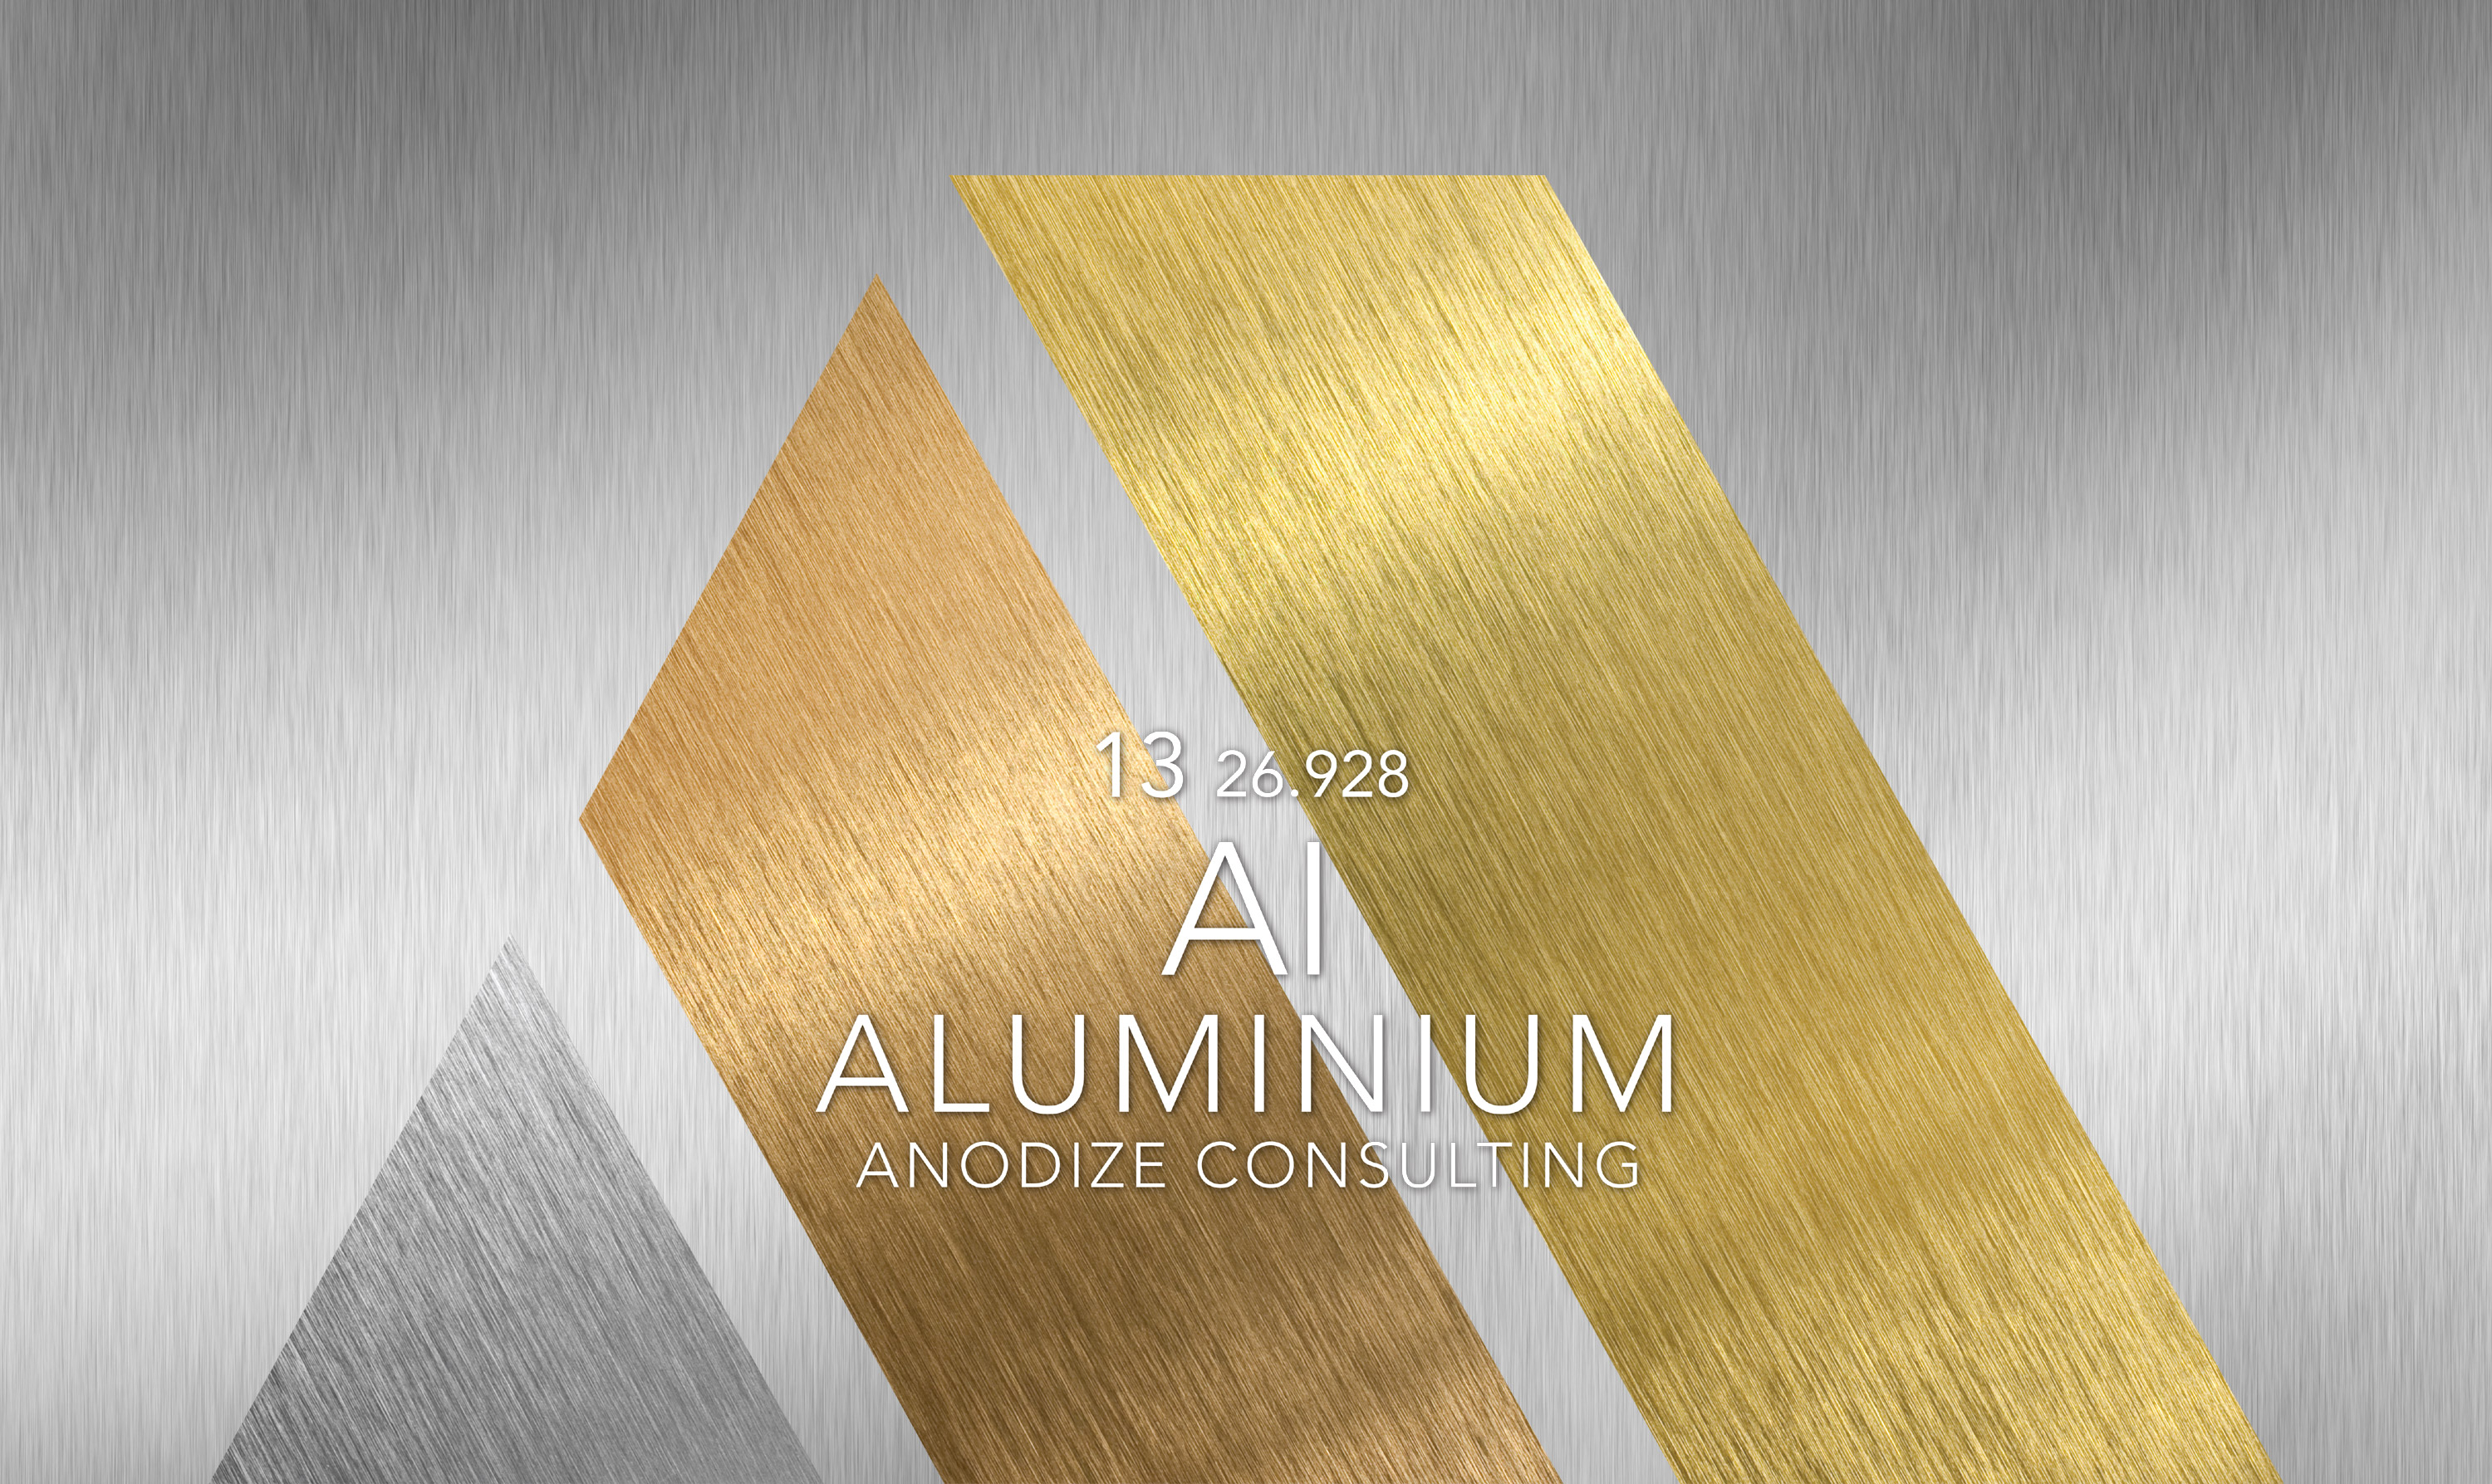 AI aluminium Anodize Consulting